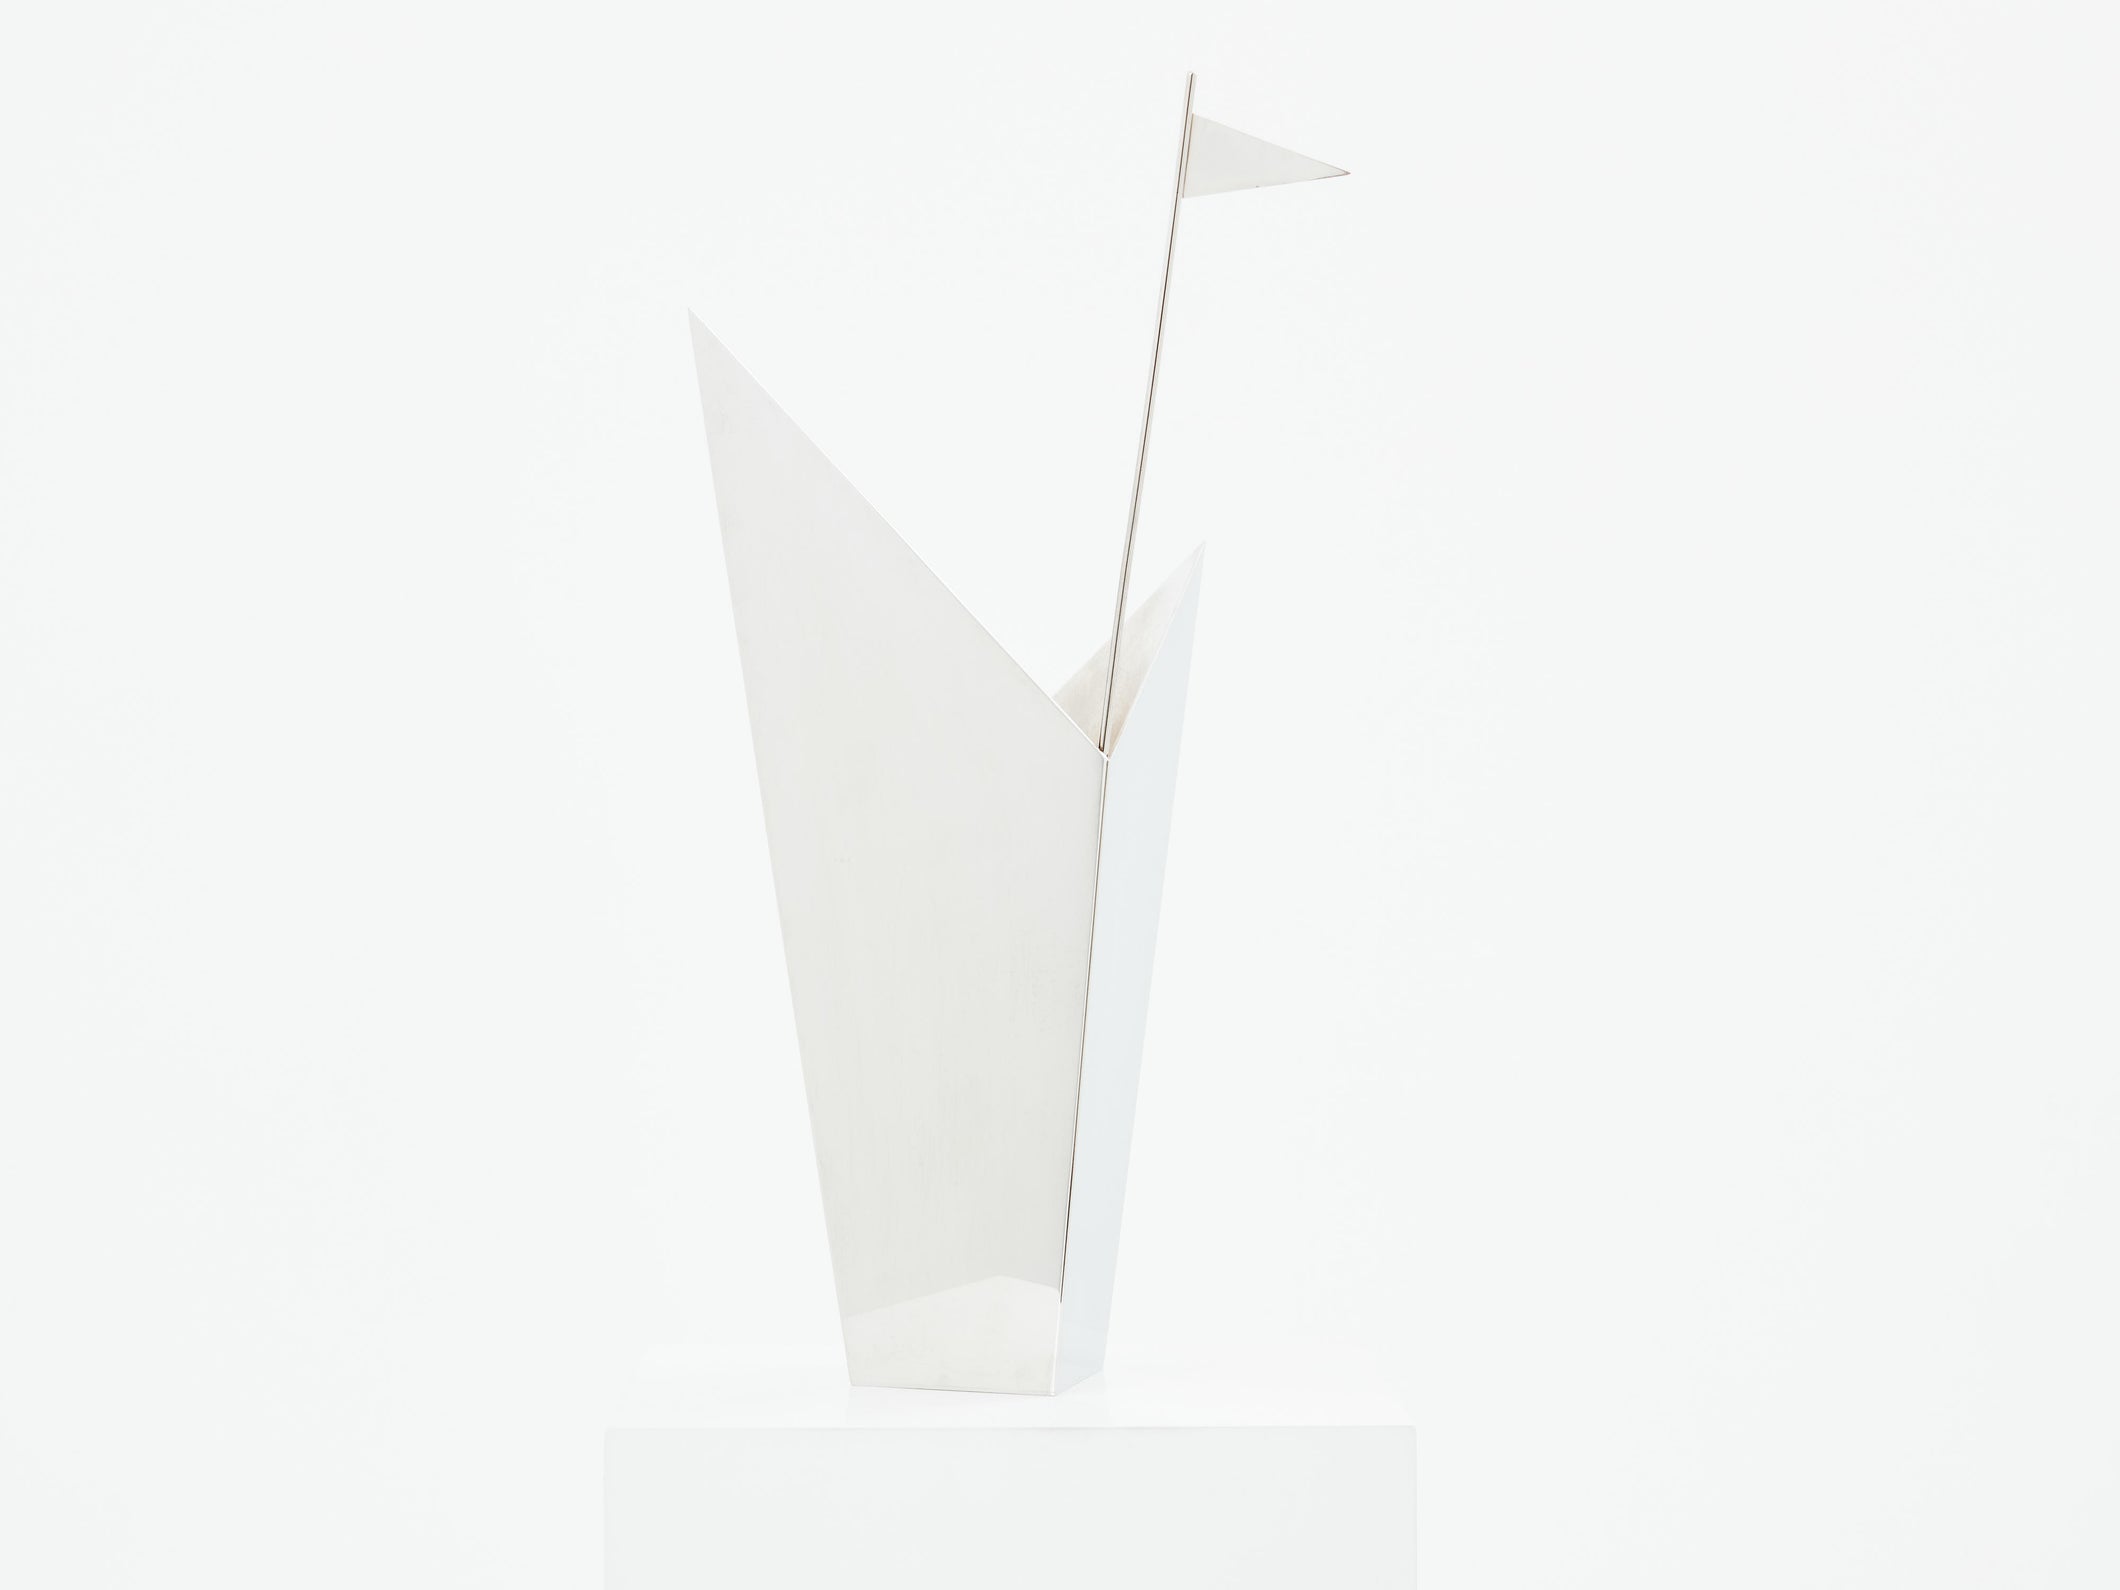 Alessandro Mendini pour Cleto Munari vase en métal argenté 2014